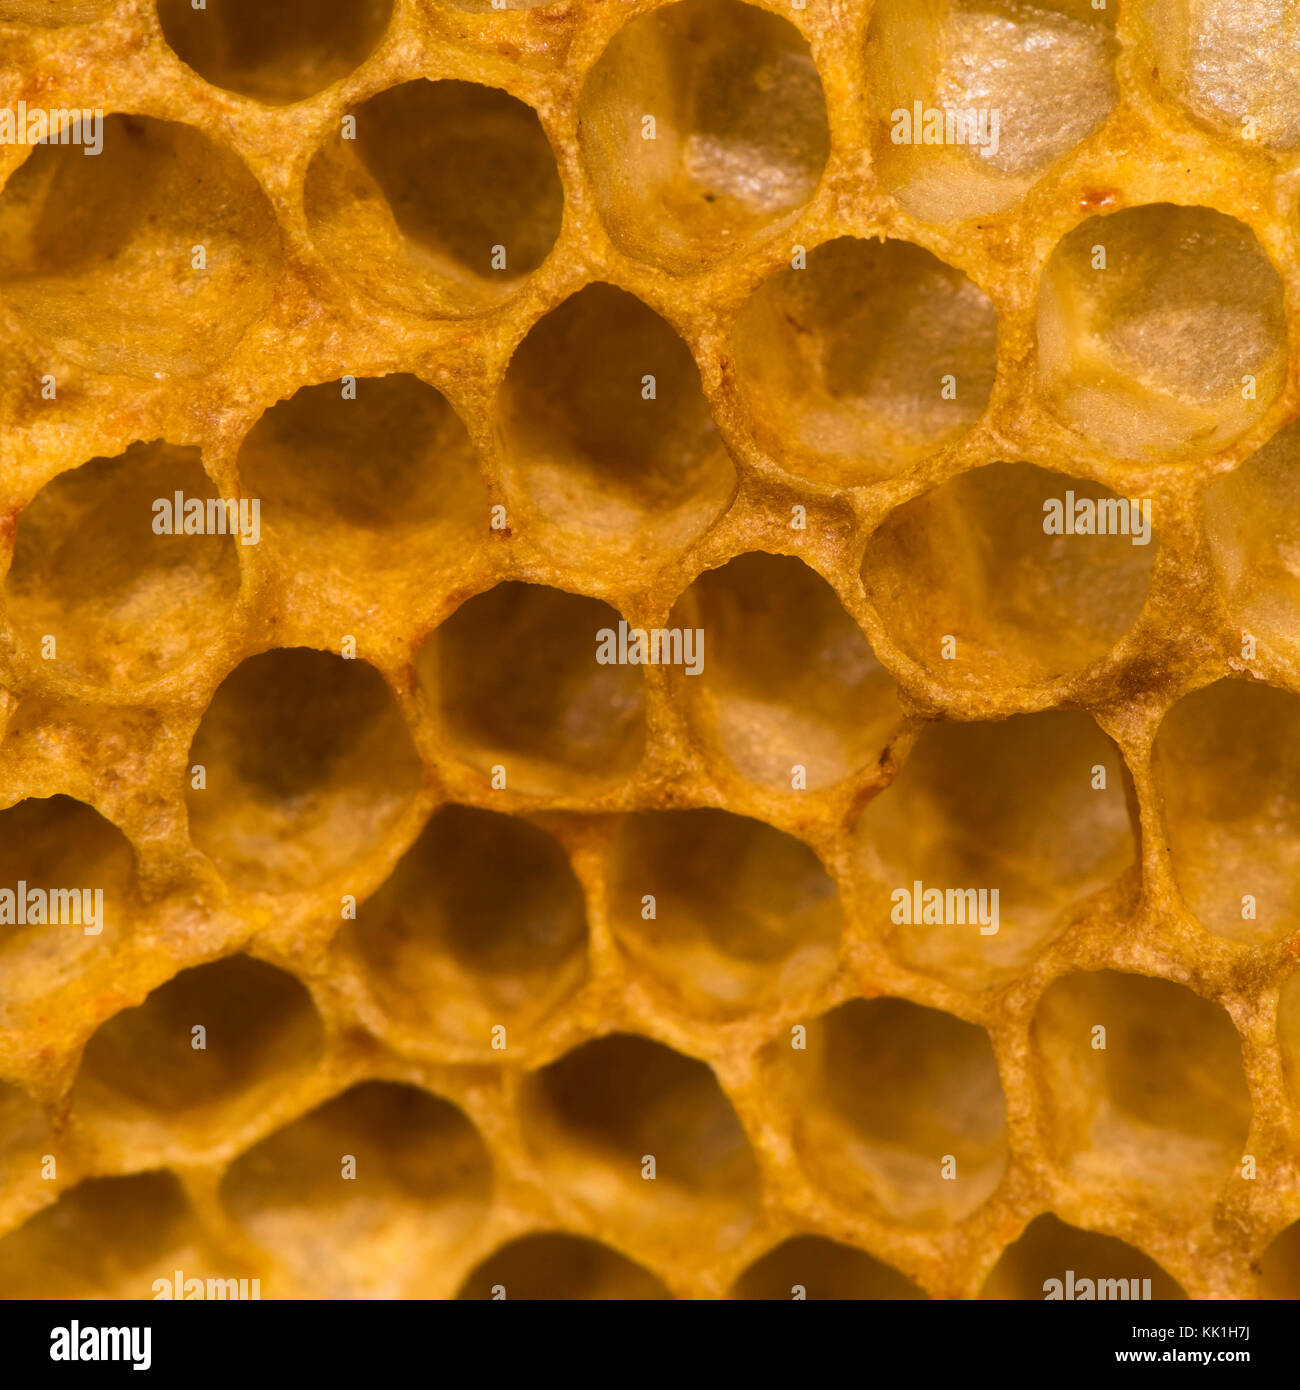 Dettaglio del pettine di miele che mostra le celle vuote. struttura esagonale all'interno di alveare di unione il miele delle api (Apis mellifera), nella famiglia apidae Foto Stock